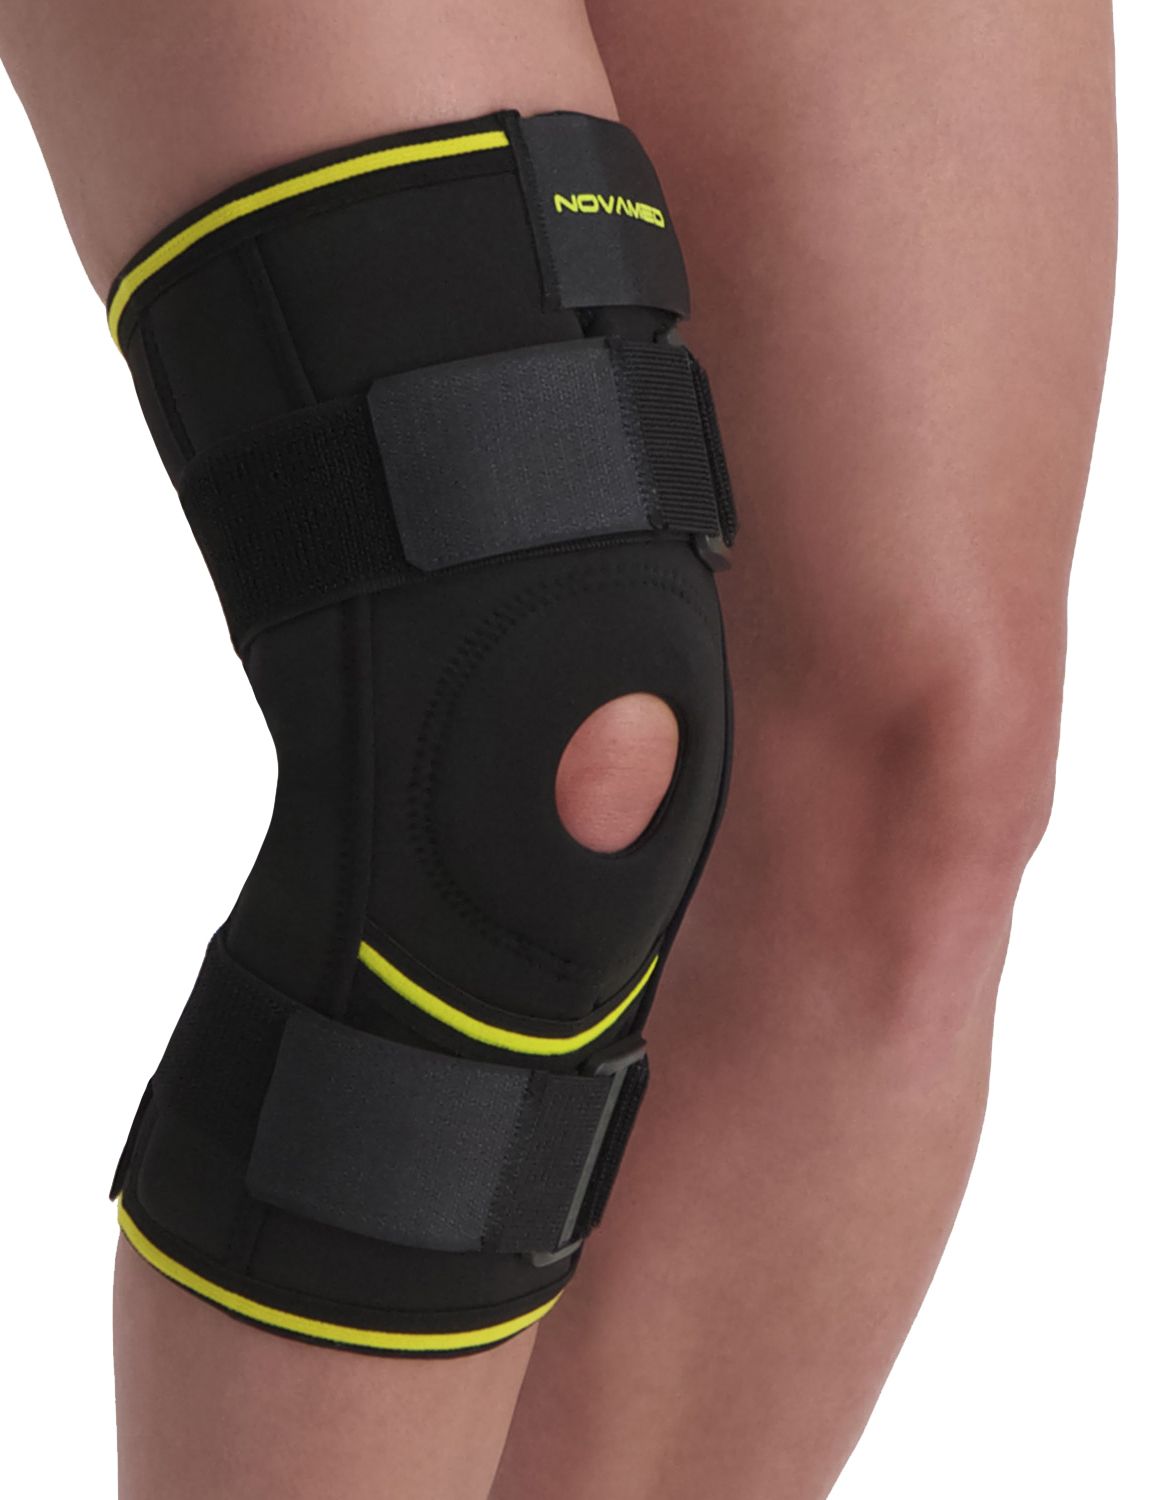 novamed lightweight hinged knee support for sale